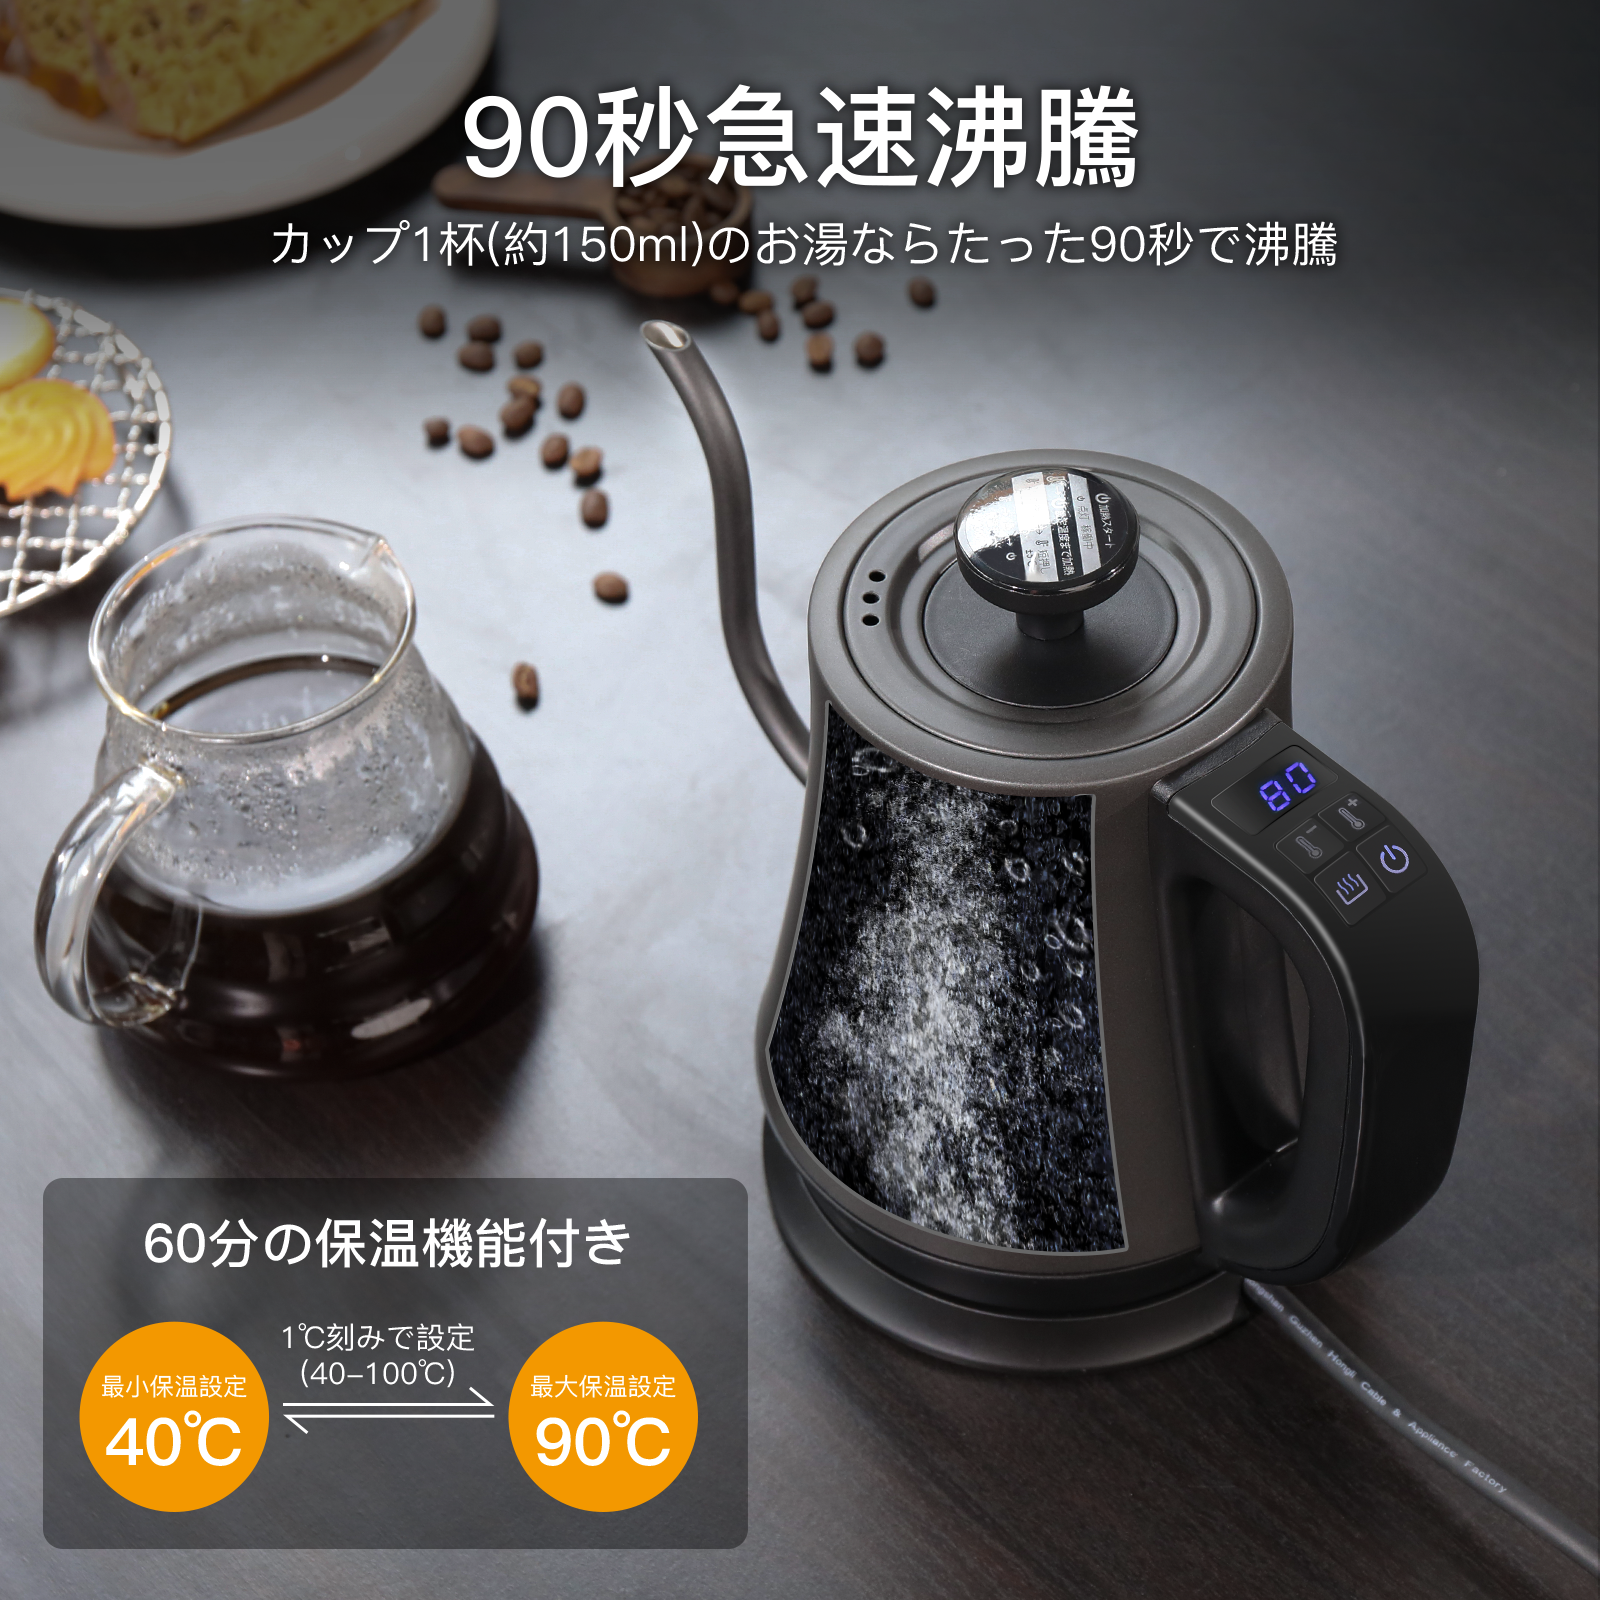 安い購入 Konicoo 電気ケトル コーヒー 1L ドリップケトル 温度設定